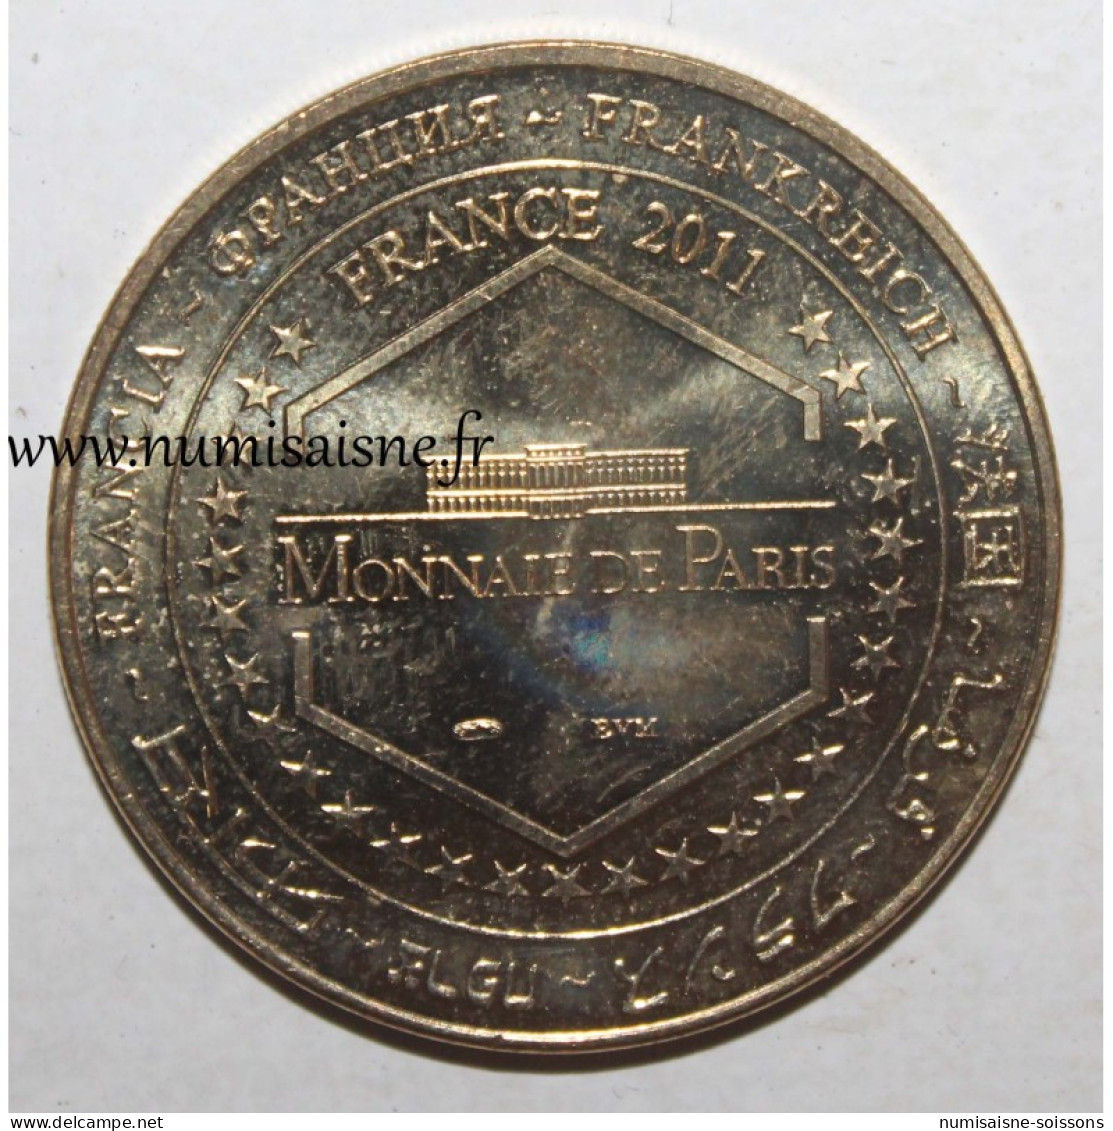 75 - PARIS - BATEAUX PARISIENS - Monnaie De Paris - 2011 - TTB - 2011